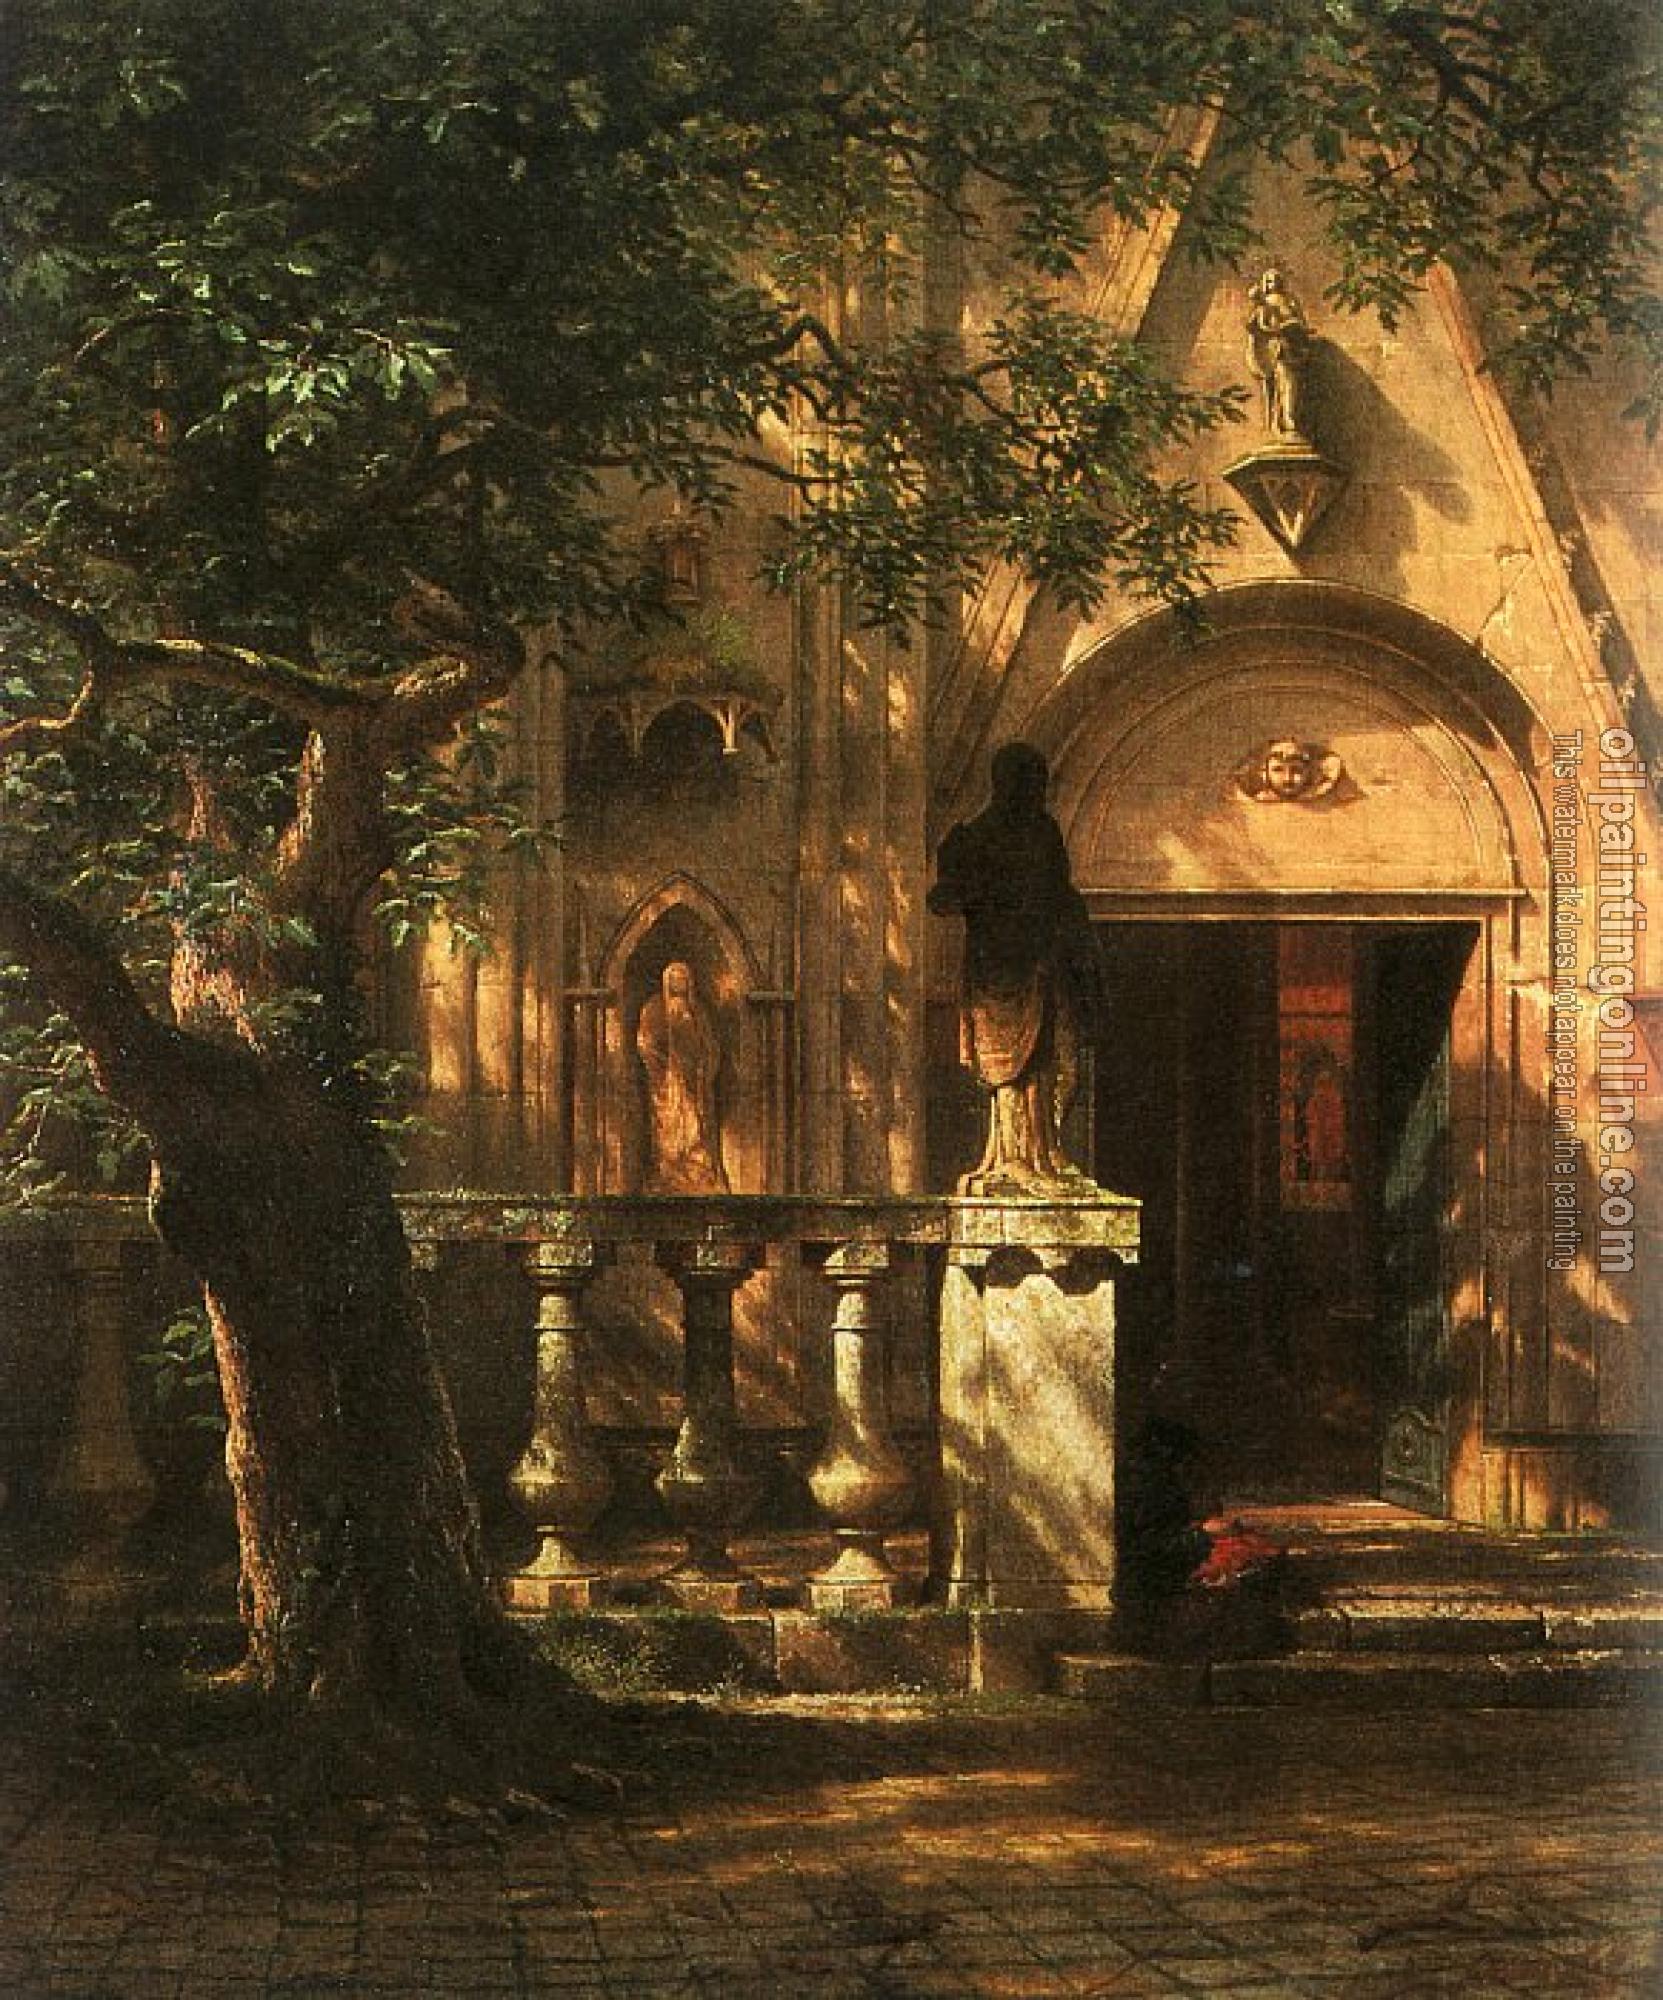 Bierstadt, Albert - Sunlight and Shadow